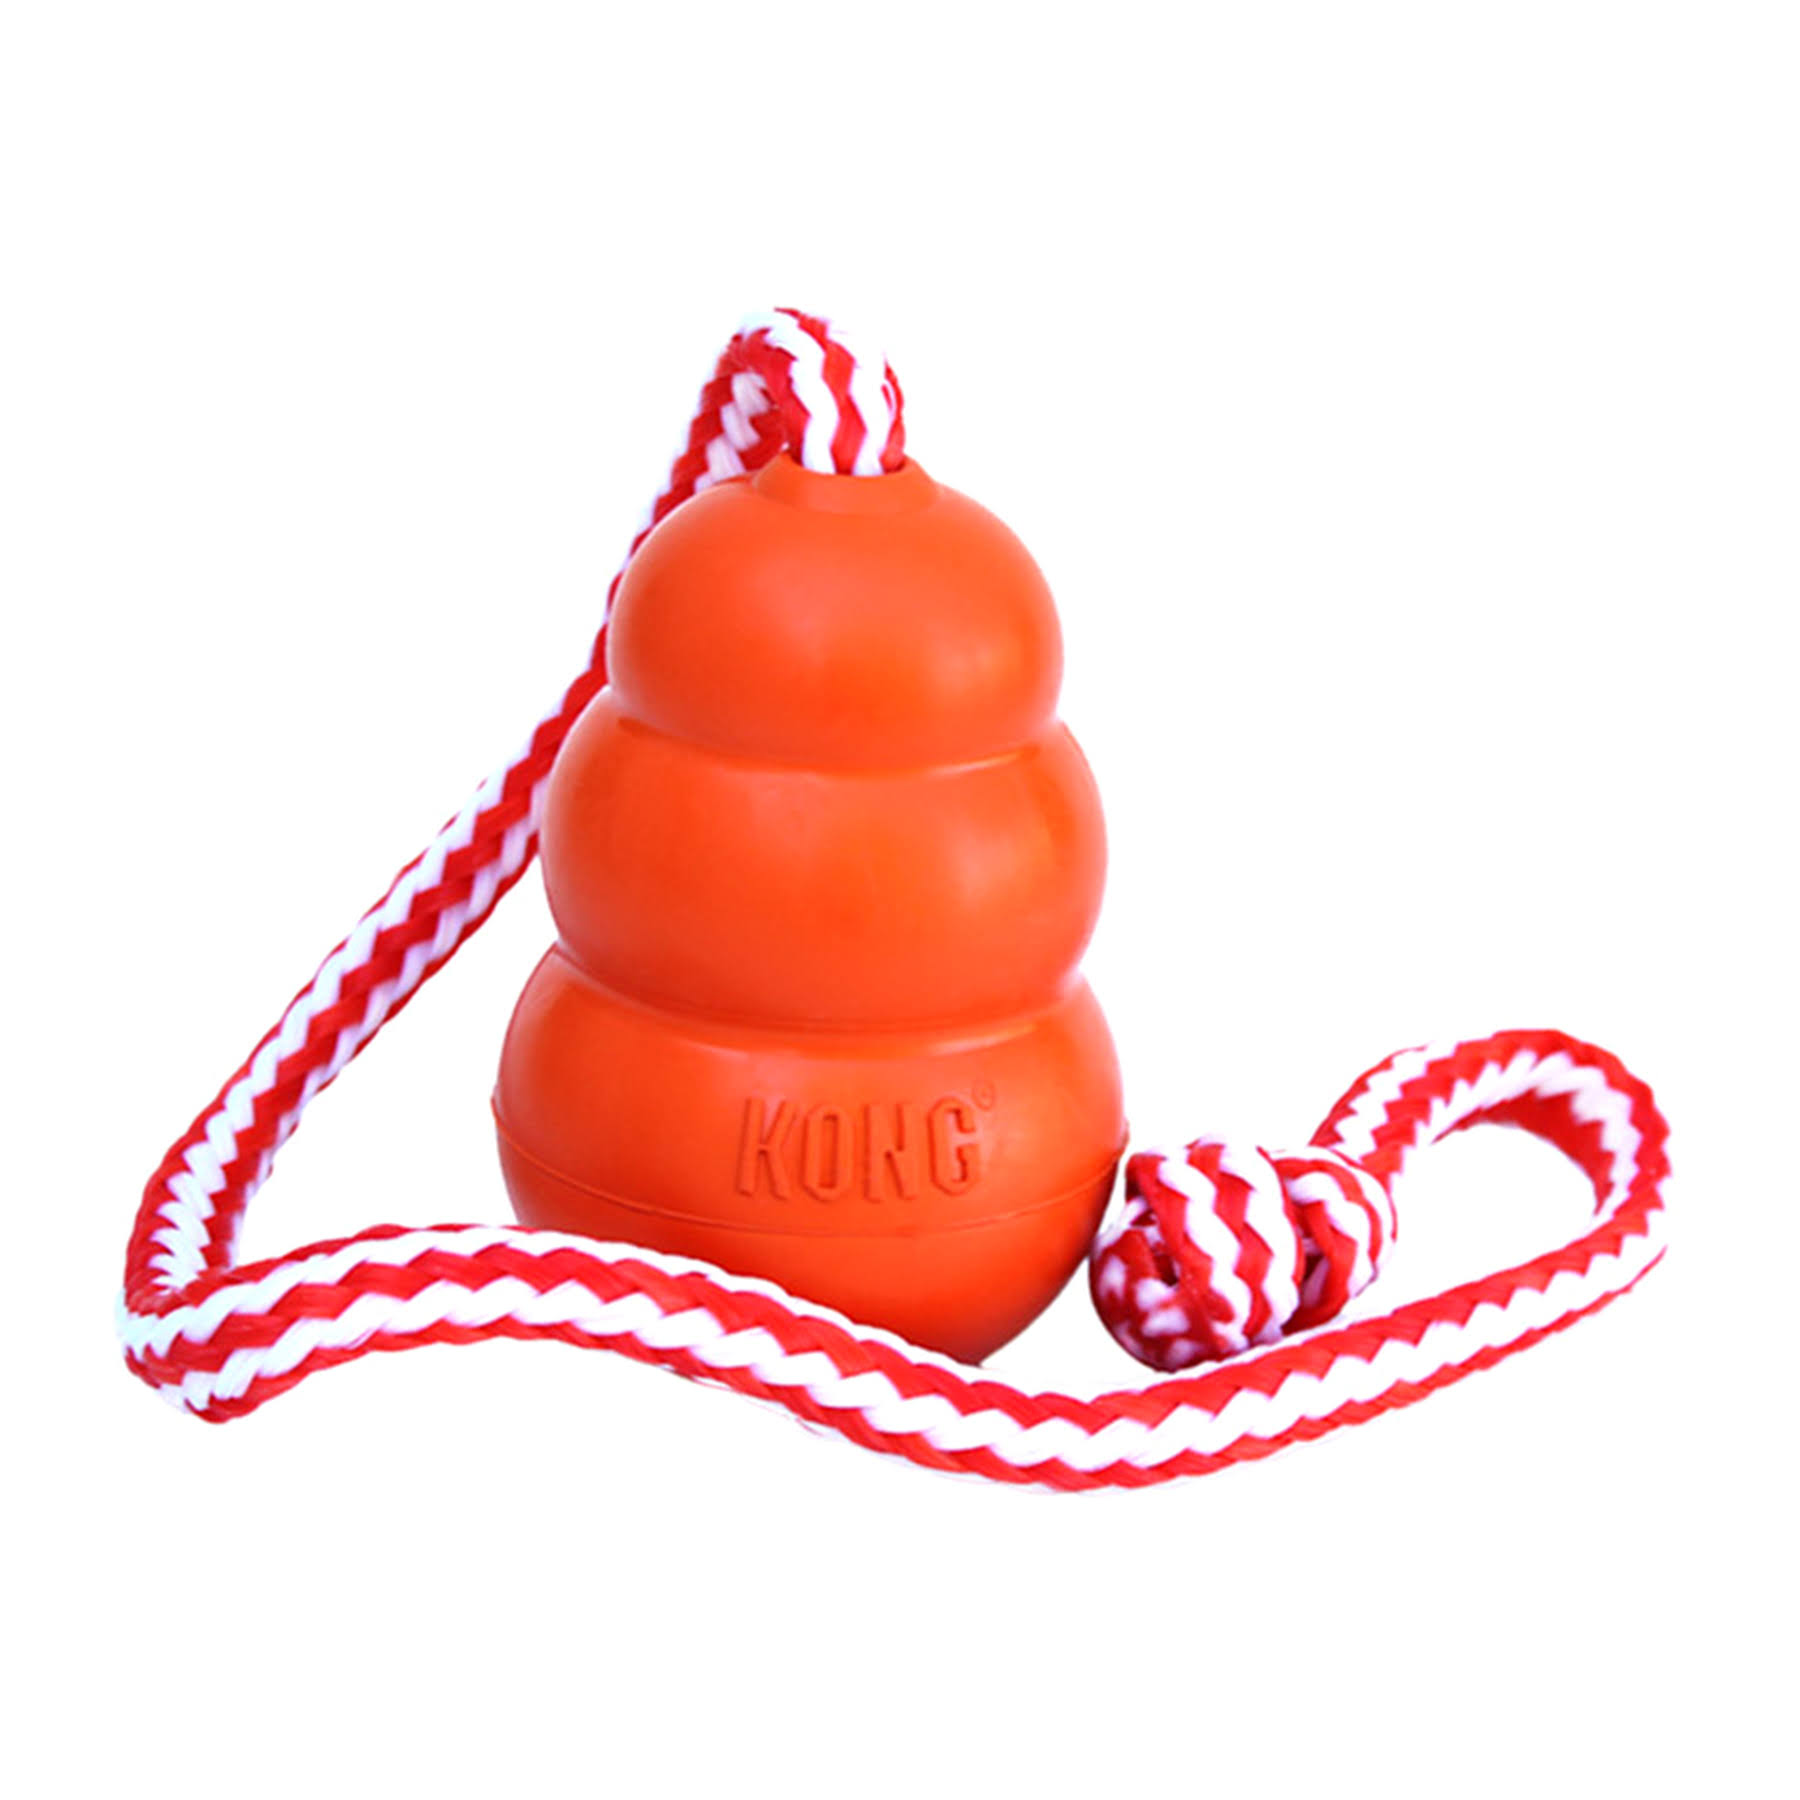 Kong Aqua Dog Toy - Large, Orange